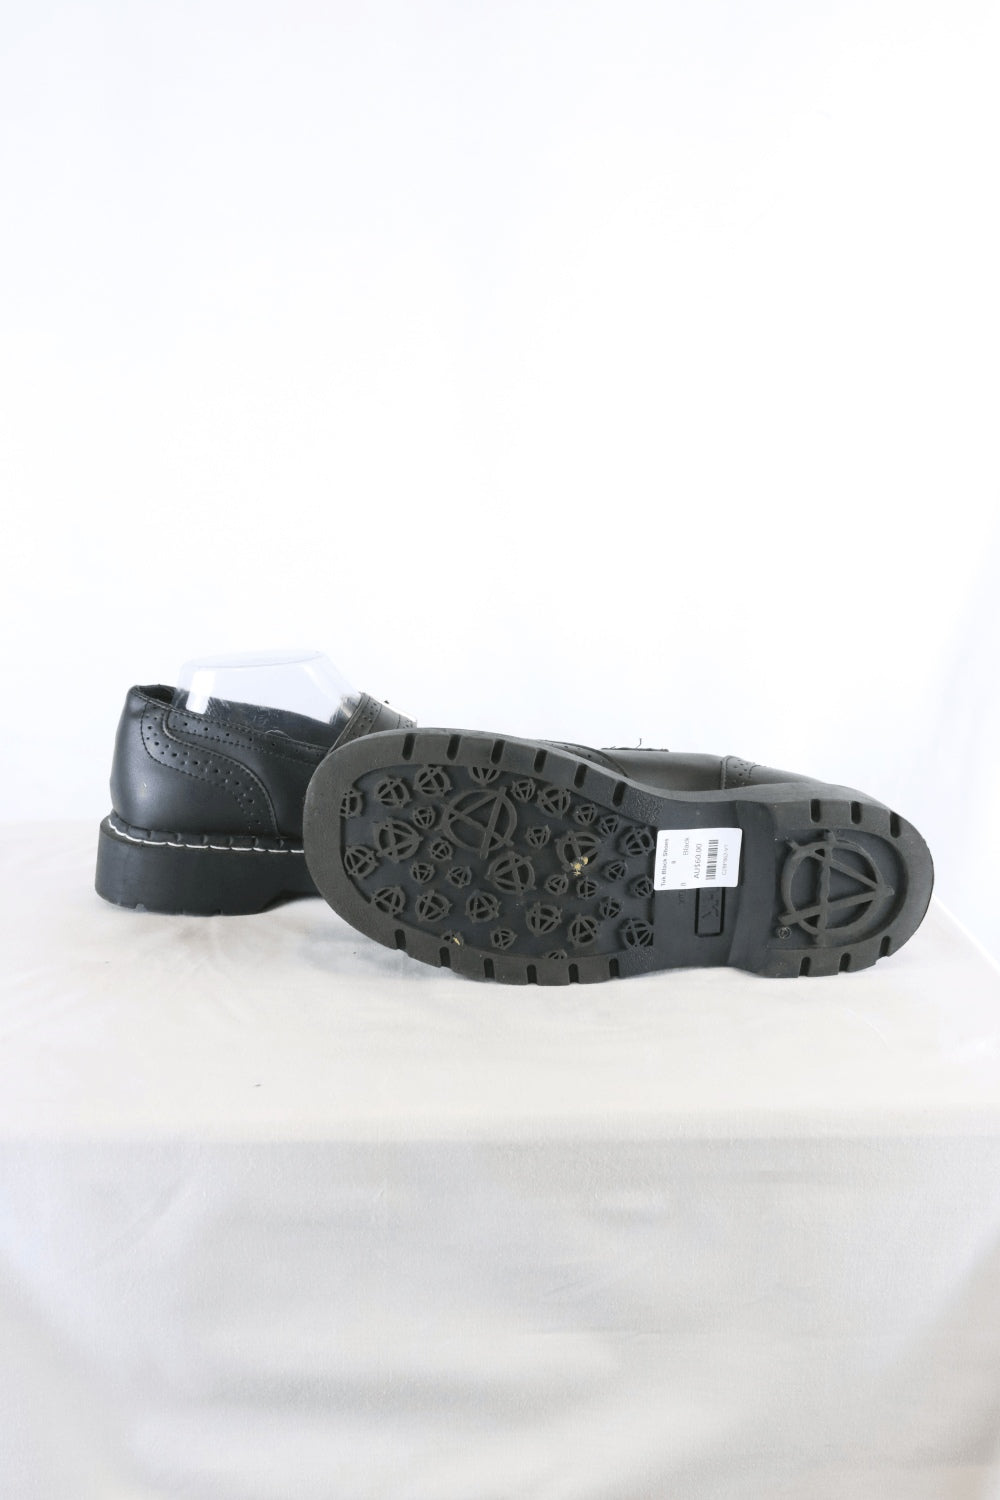 Tuk Black Shoes 8